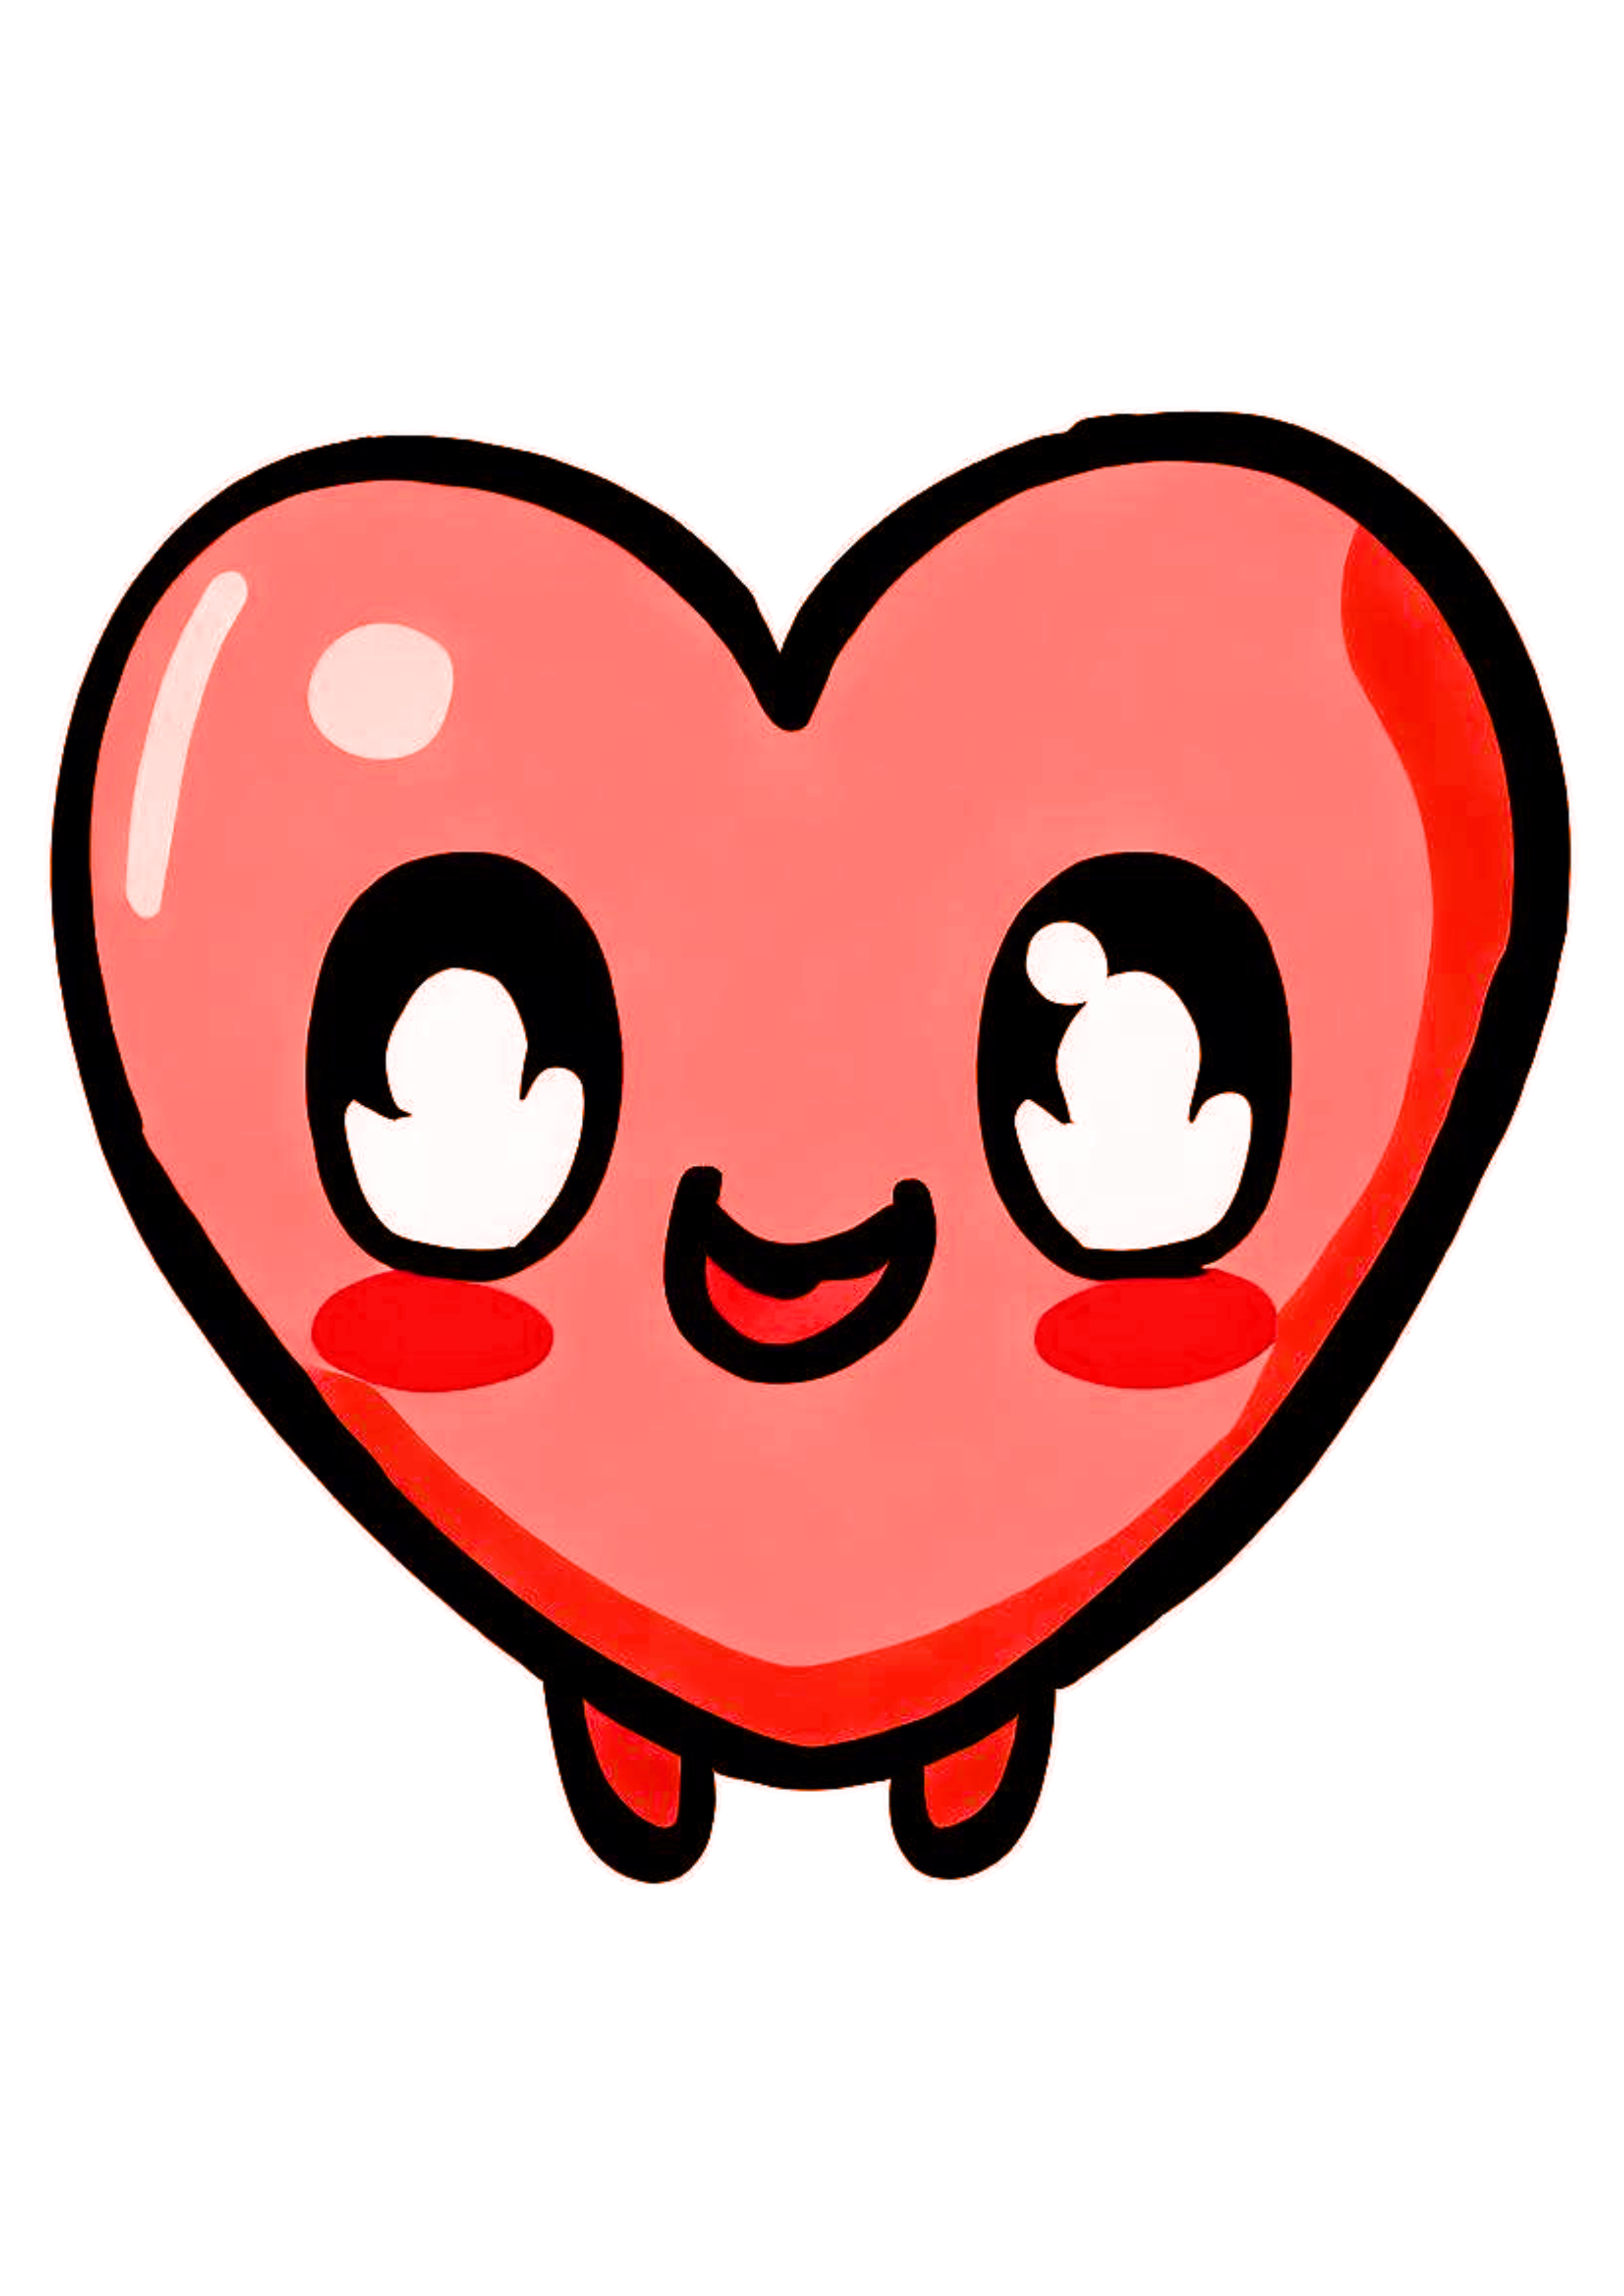 Coração fofinho cute figurinha feliz e sorridente emojis grátis artes gráficas design fundo transparente png